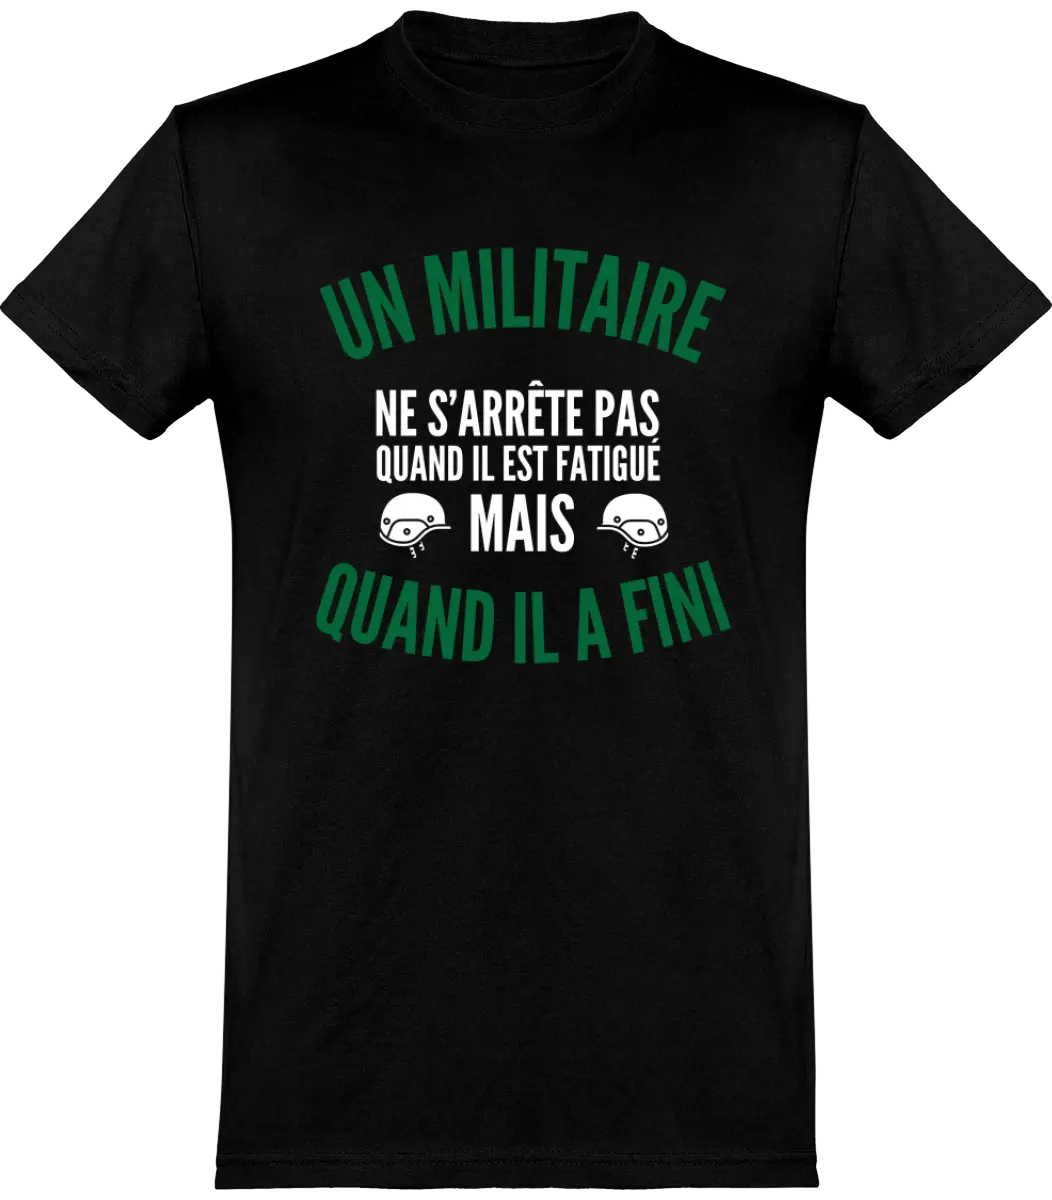 T-shirt Militaire "Un militaire ne s'arrête pas quand il est fatigué mais quand il a fini" | Mixte - French Humour